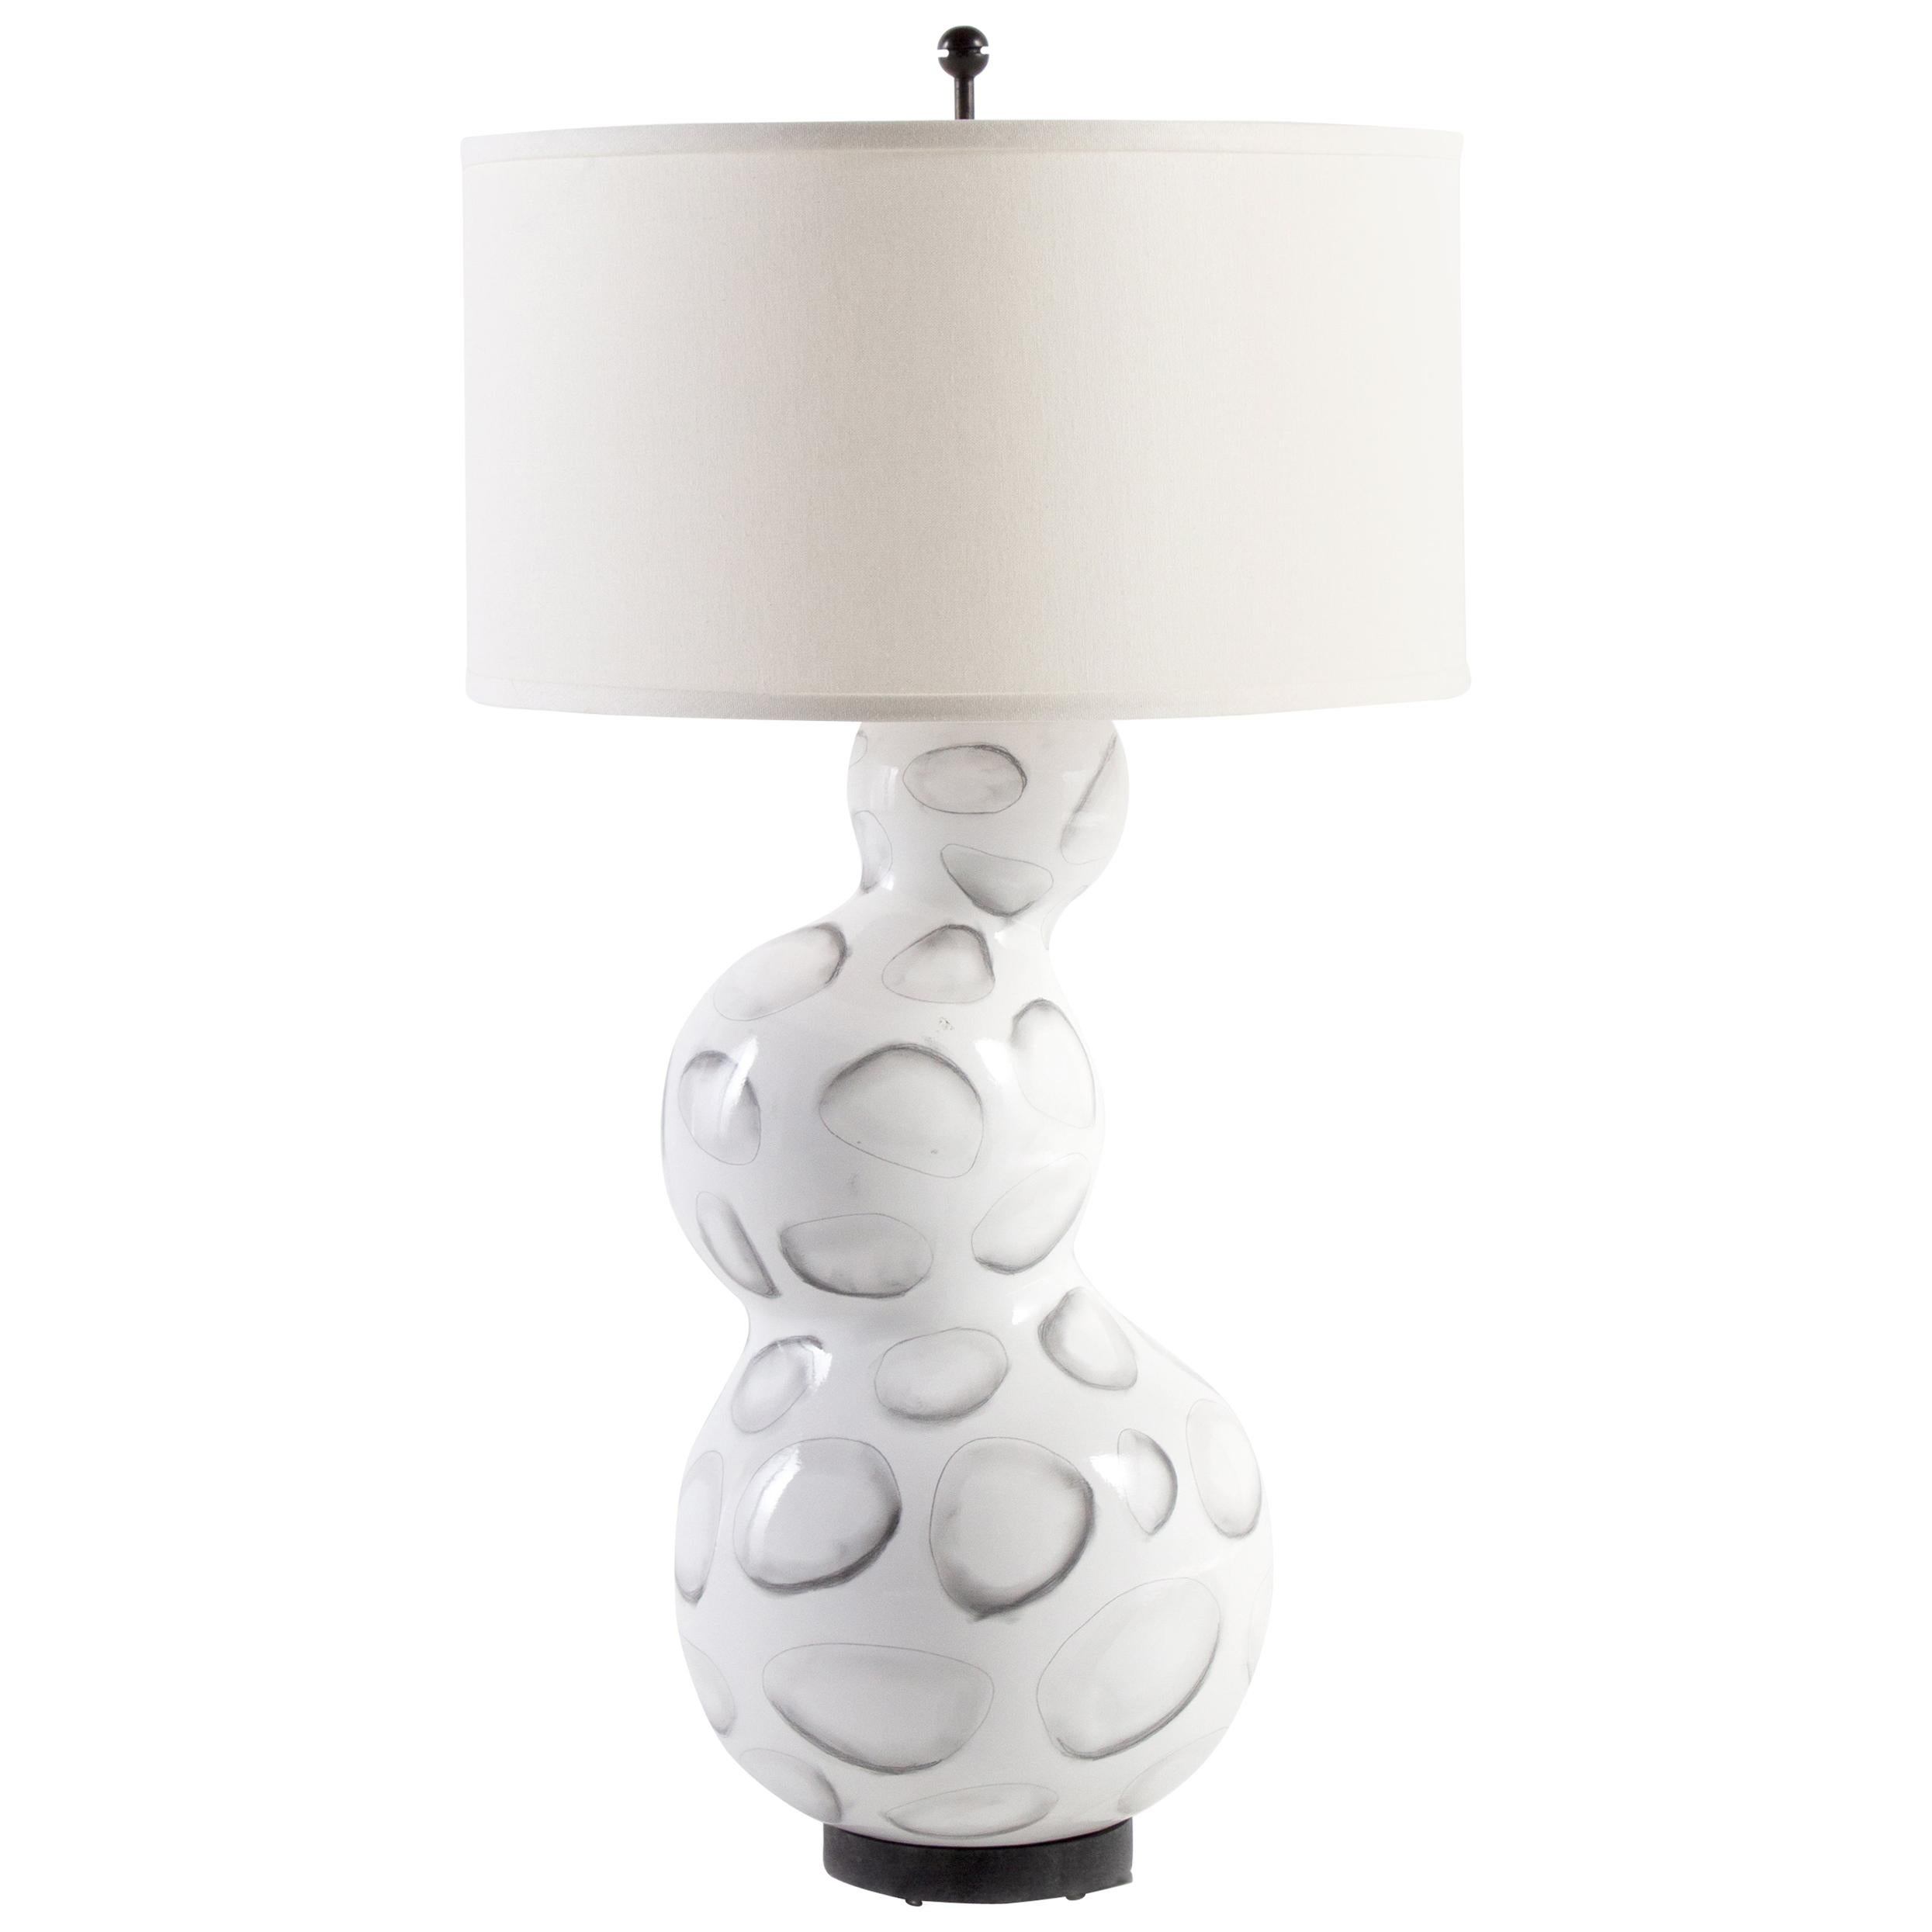 RENG, Sheru, Gloss White Glazed Ceramic with Stylized Shell Design Lamp